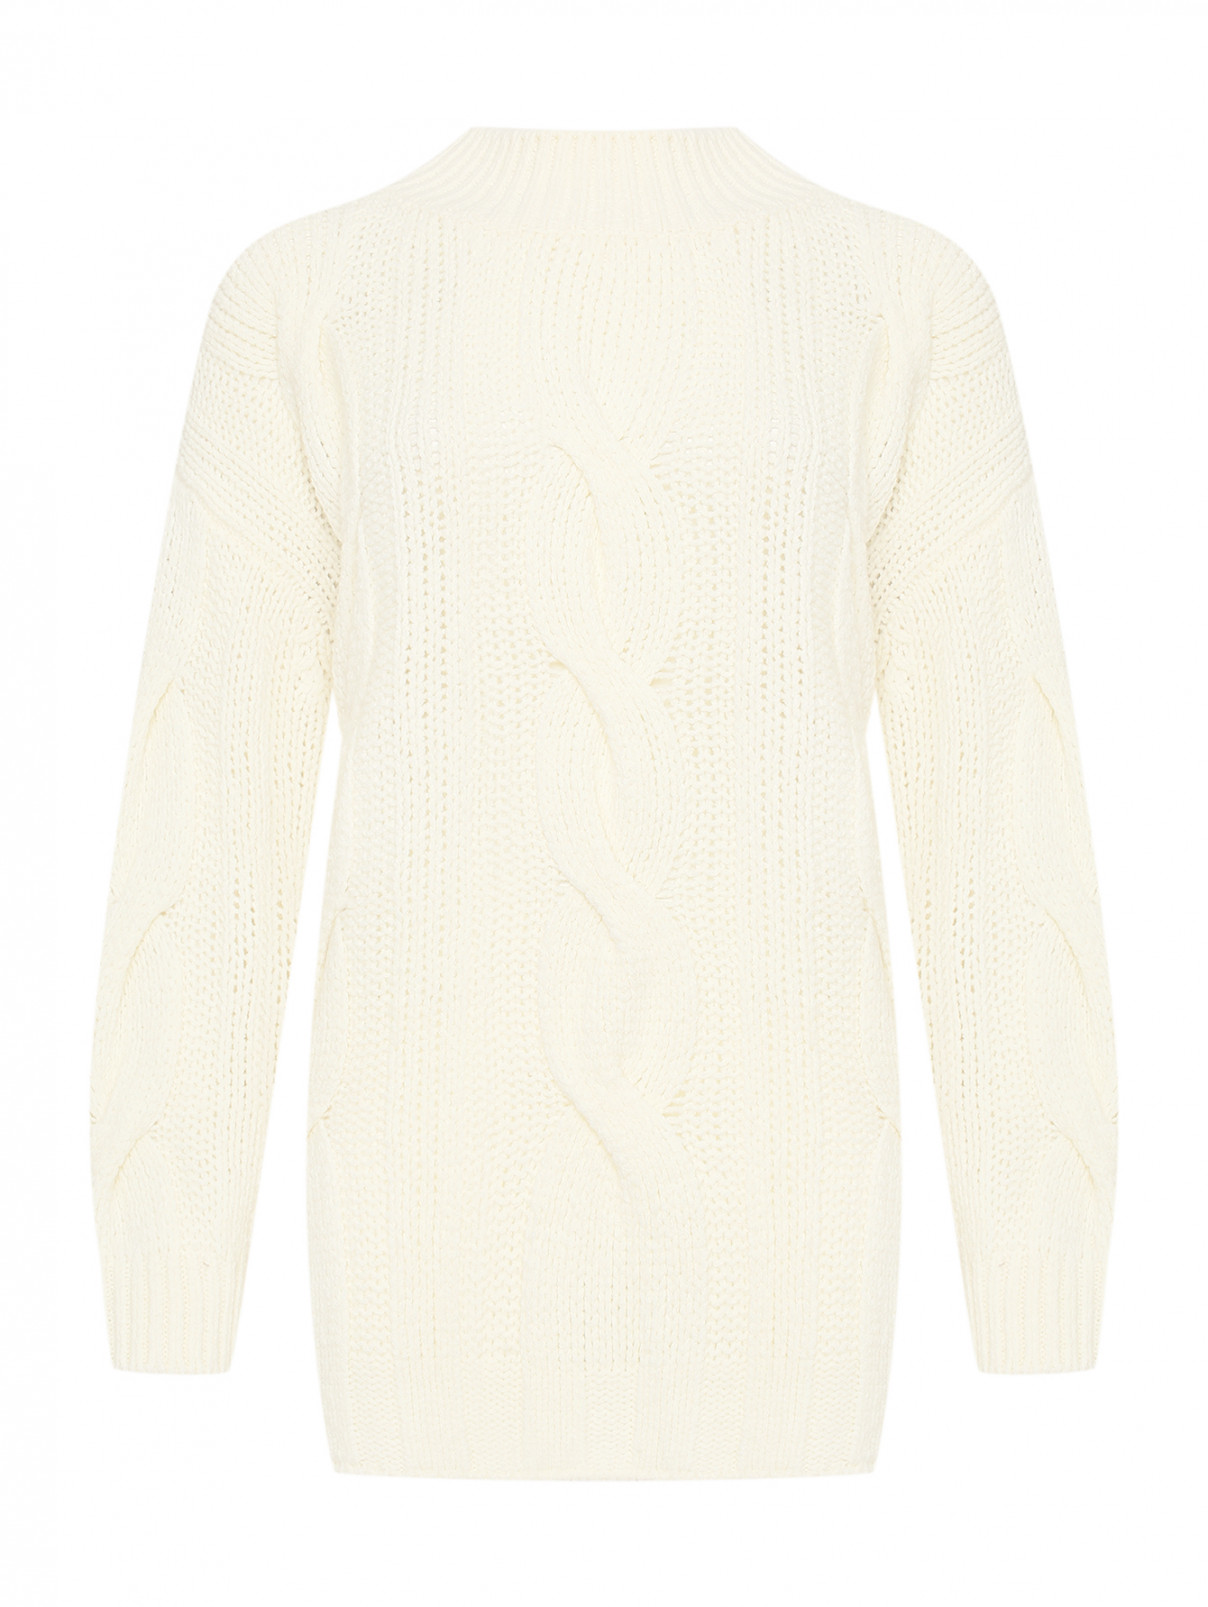 Джемпер из шерсти крупной вязки Max&Co  –  Общий вид  – Цвет:  Белый